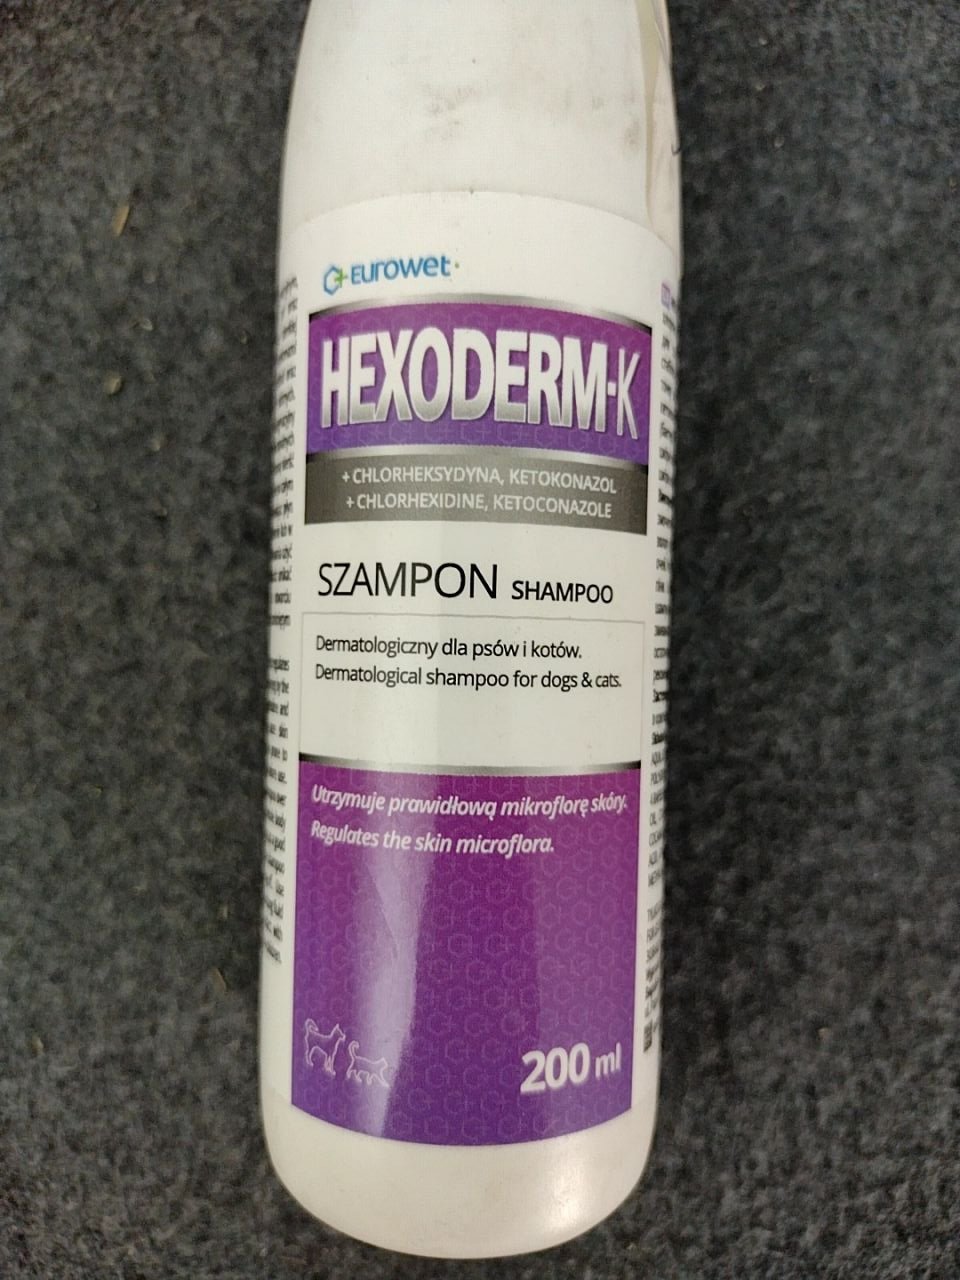 Dermatologický šampon pro psy a kočky s ketokonazolem. Hexoderm 